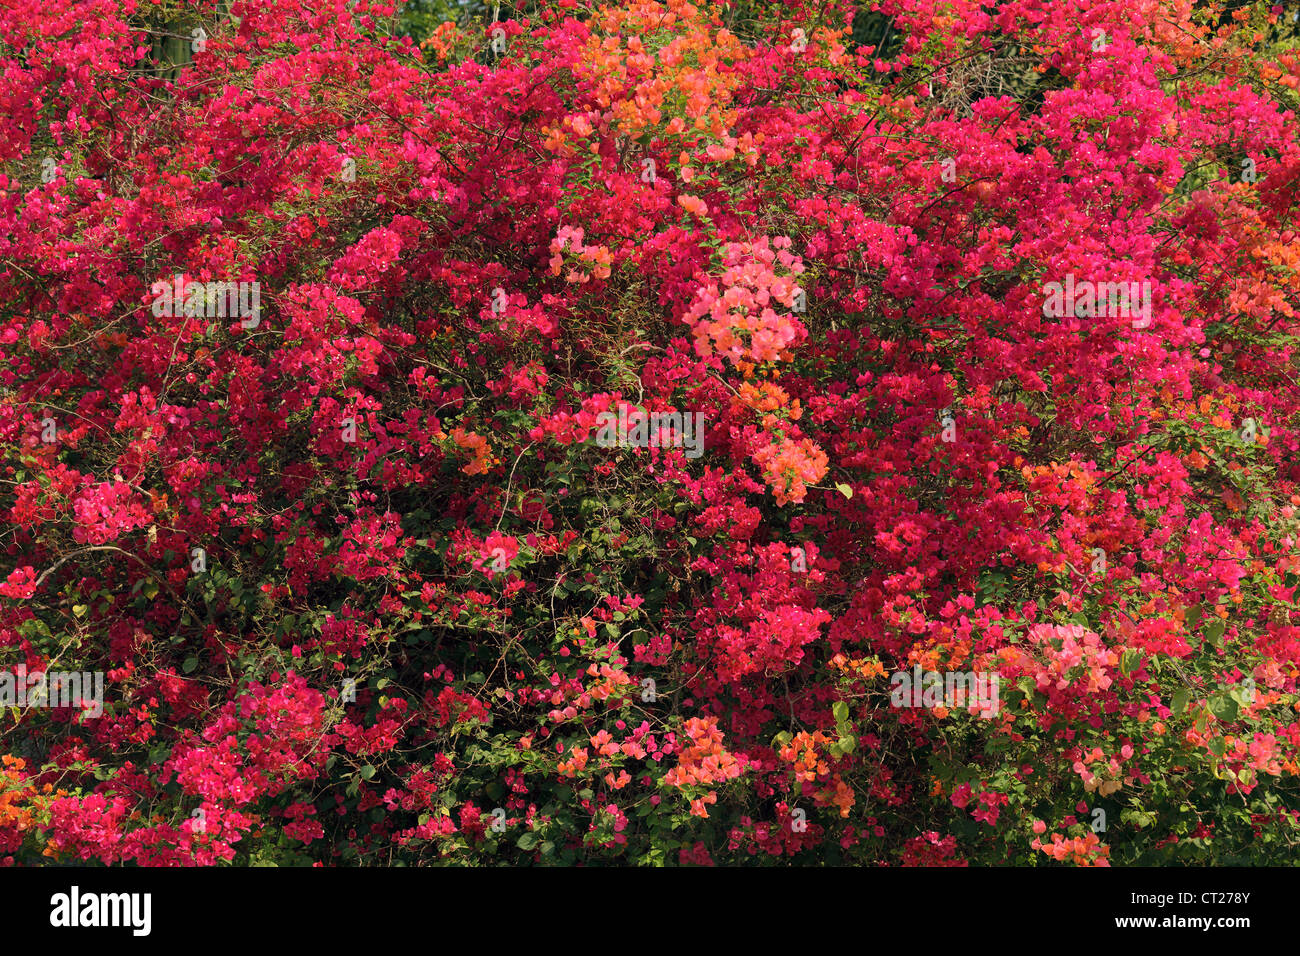 big bougainvillea blossom in tropical climate Stock Photo